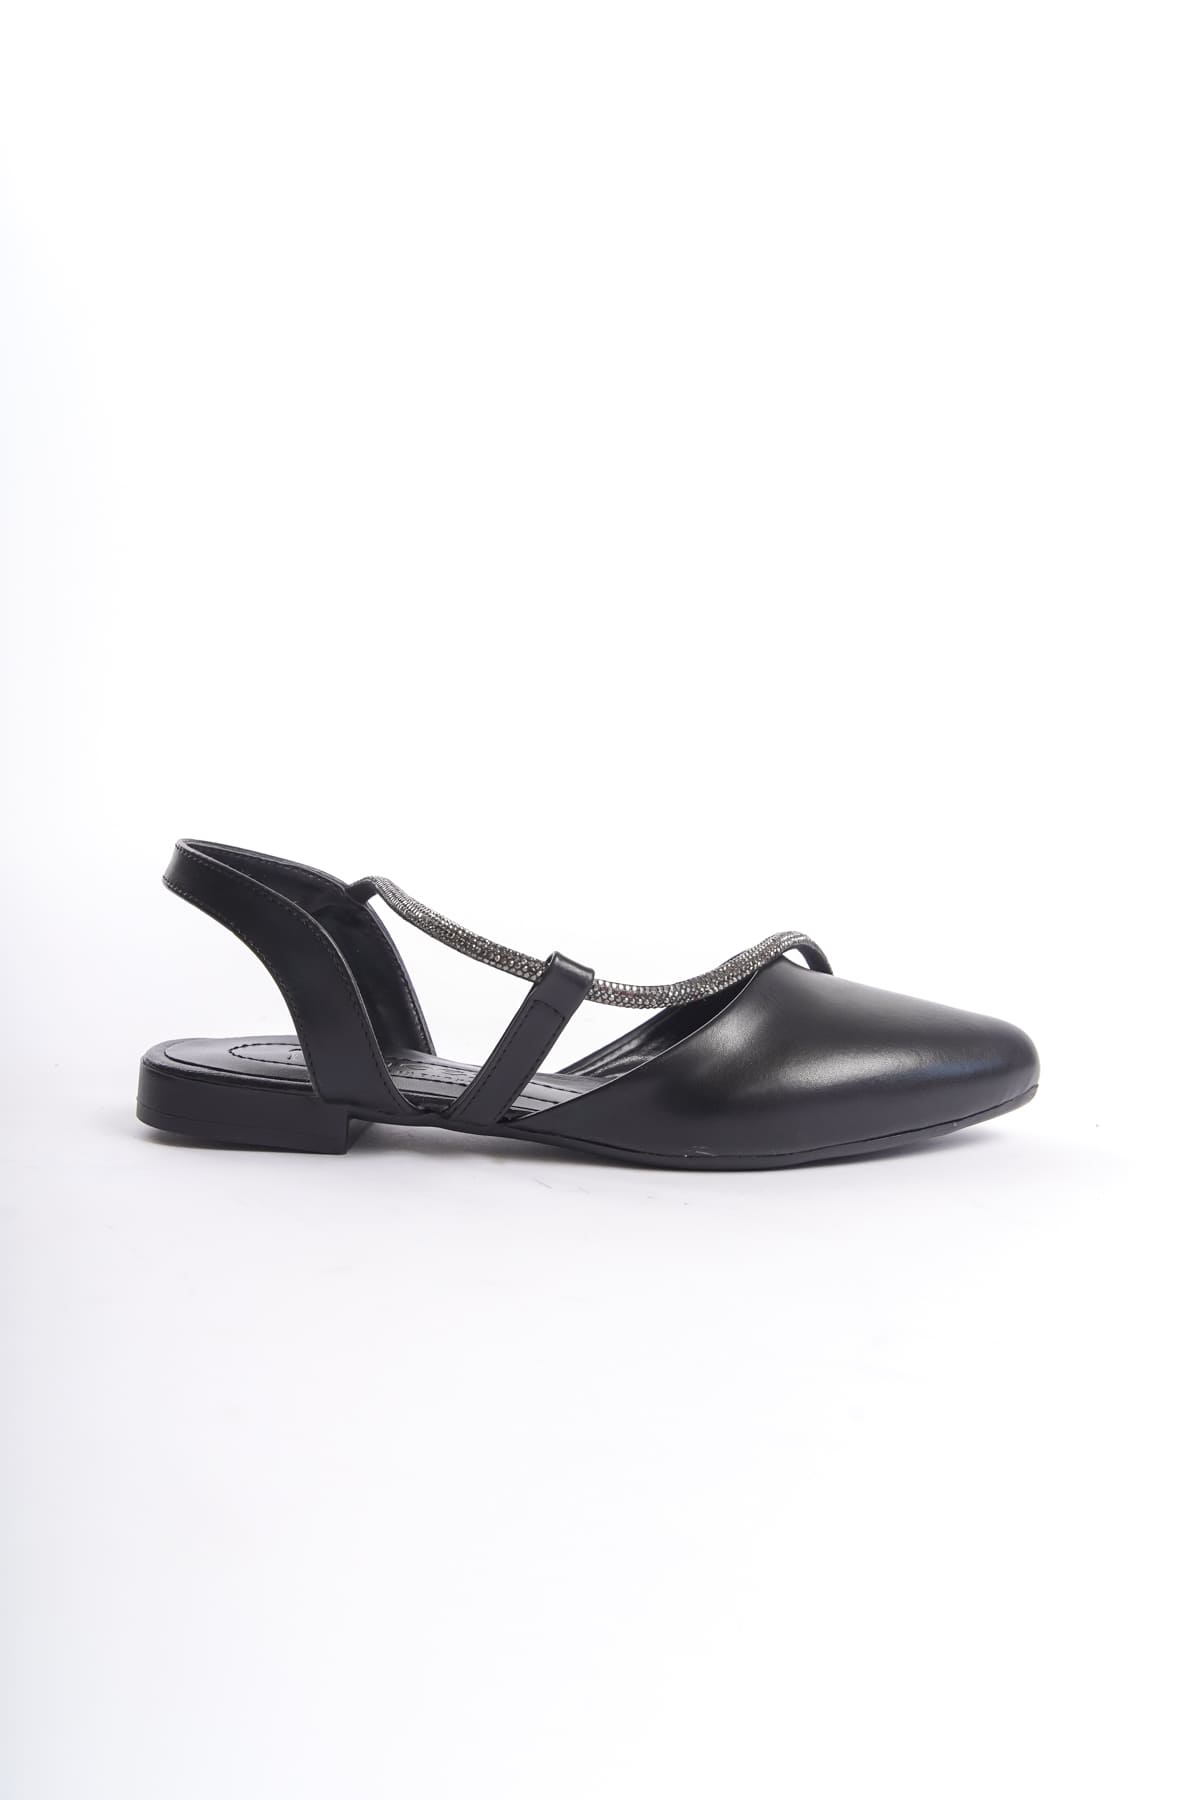 CLZ948  Lastikli Ortopedik Rahat Taban Taş Detaylı Kadın Babet Ayakkabı ST Siyah